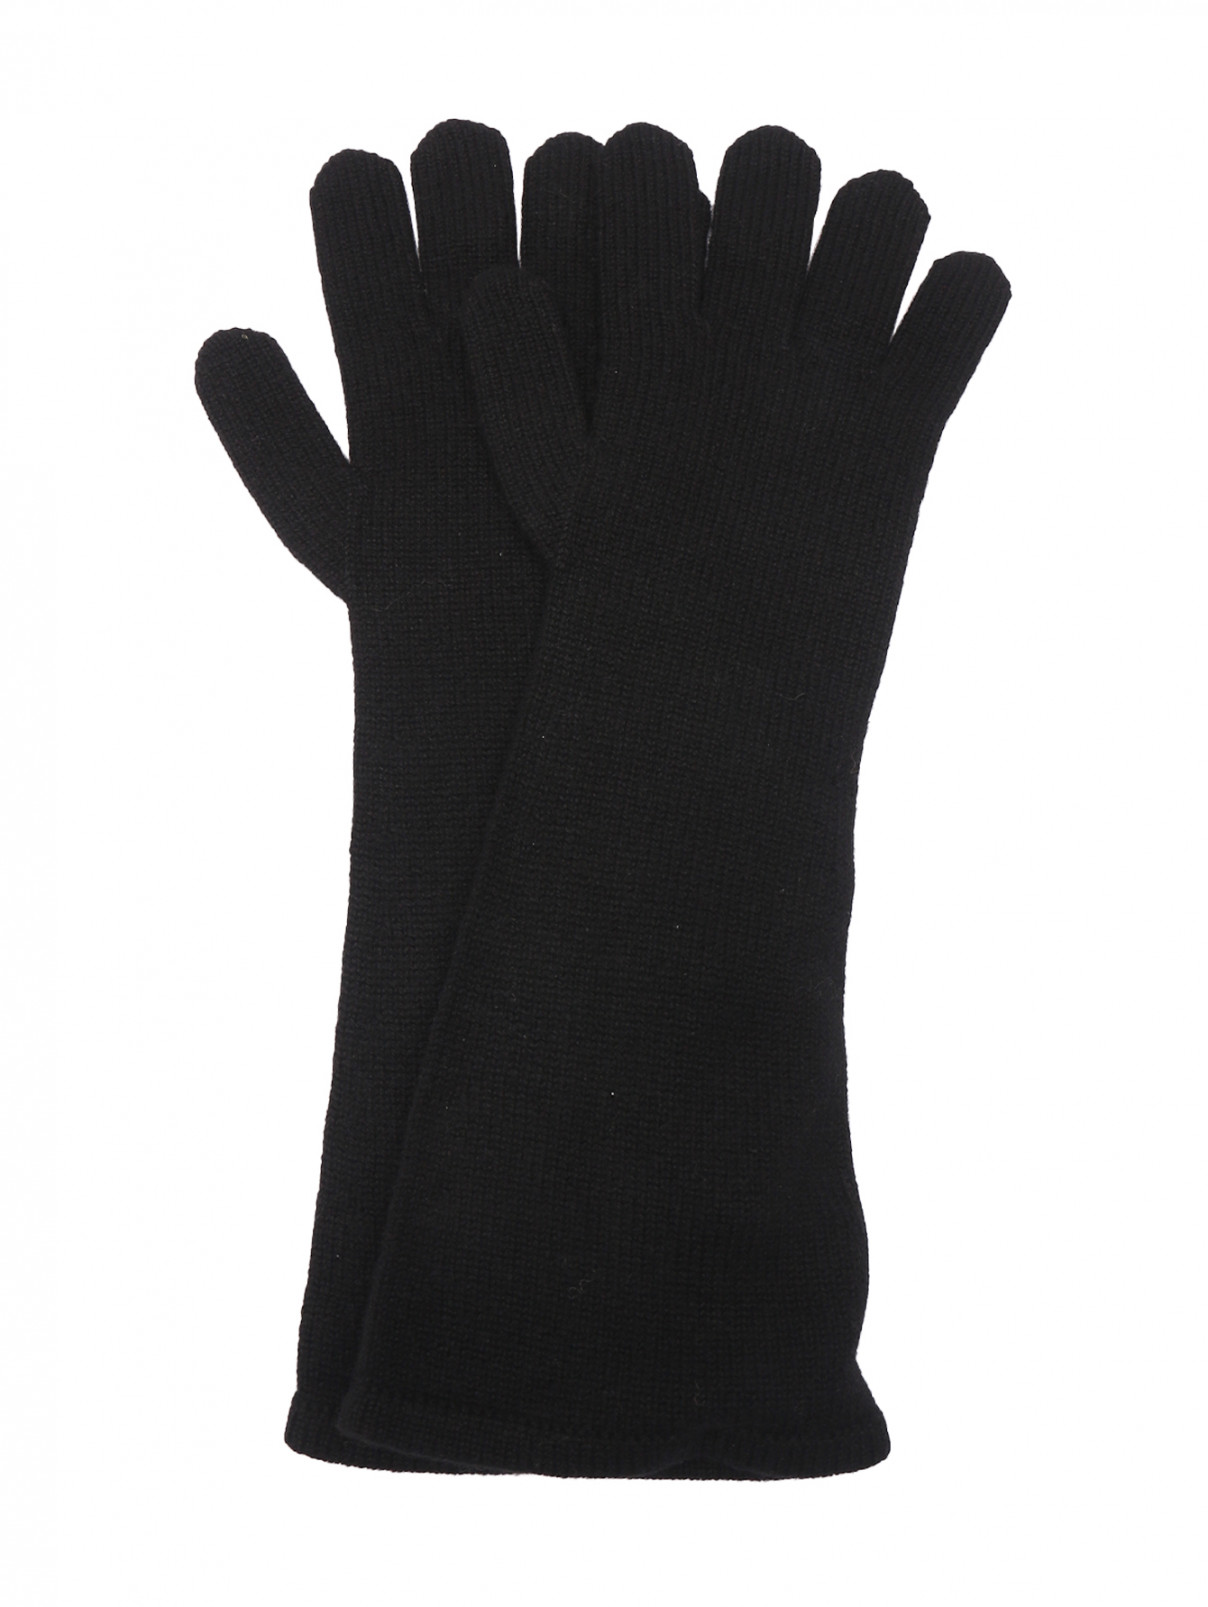 Длинные перчатки из кашемира Max Mara  –  Общий вид  – Цвет:  Черный